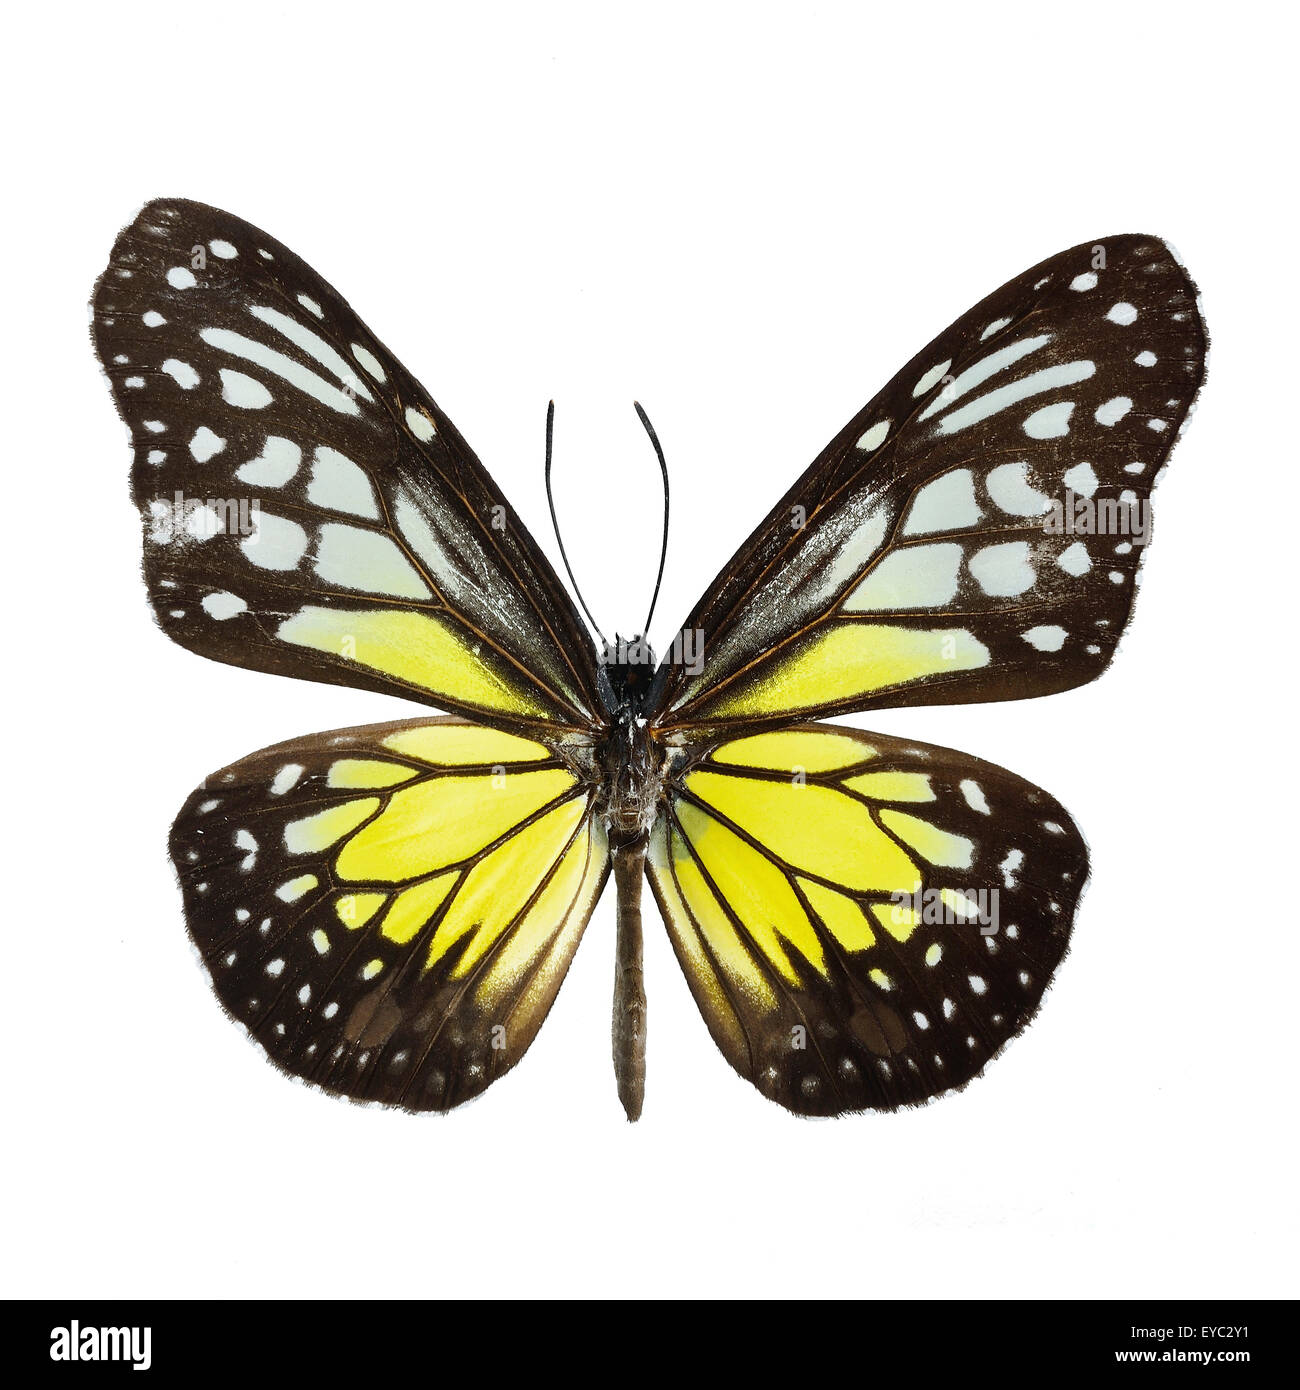 Vetroso di colore giallo Tiger butterfly (Parantica aspasia), isolati su sfondo bianco Foto Stock